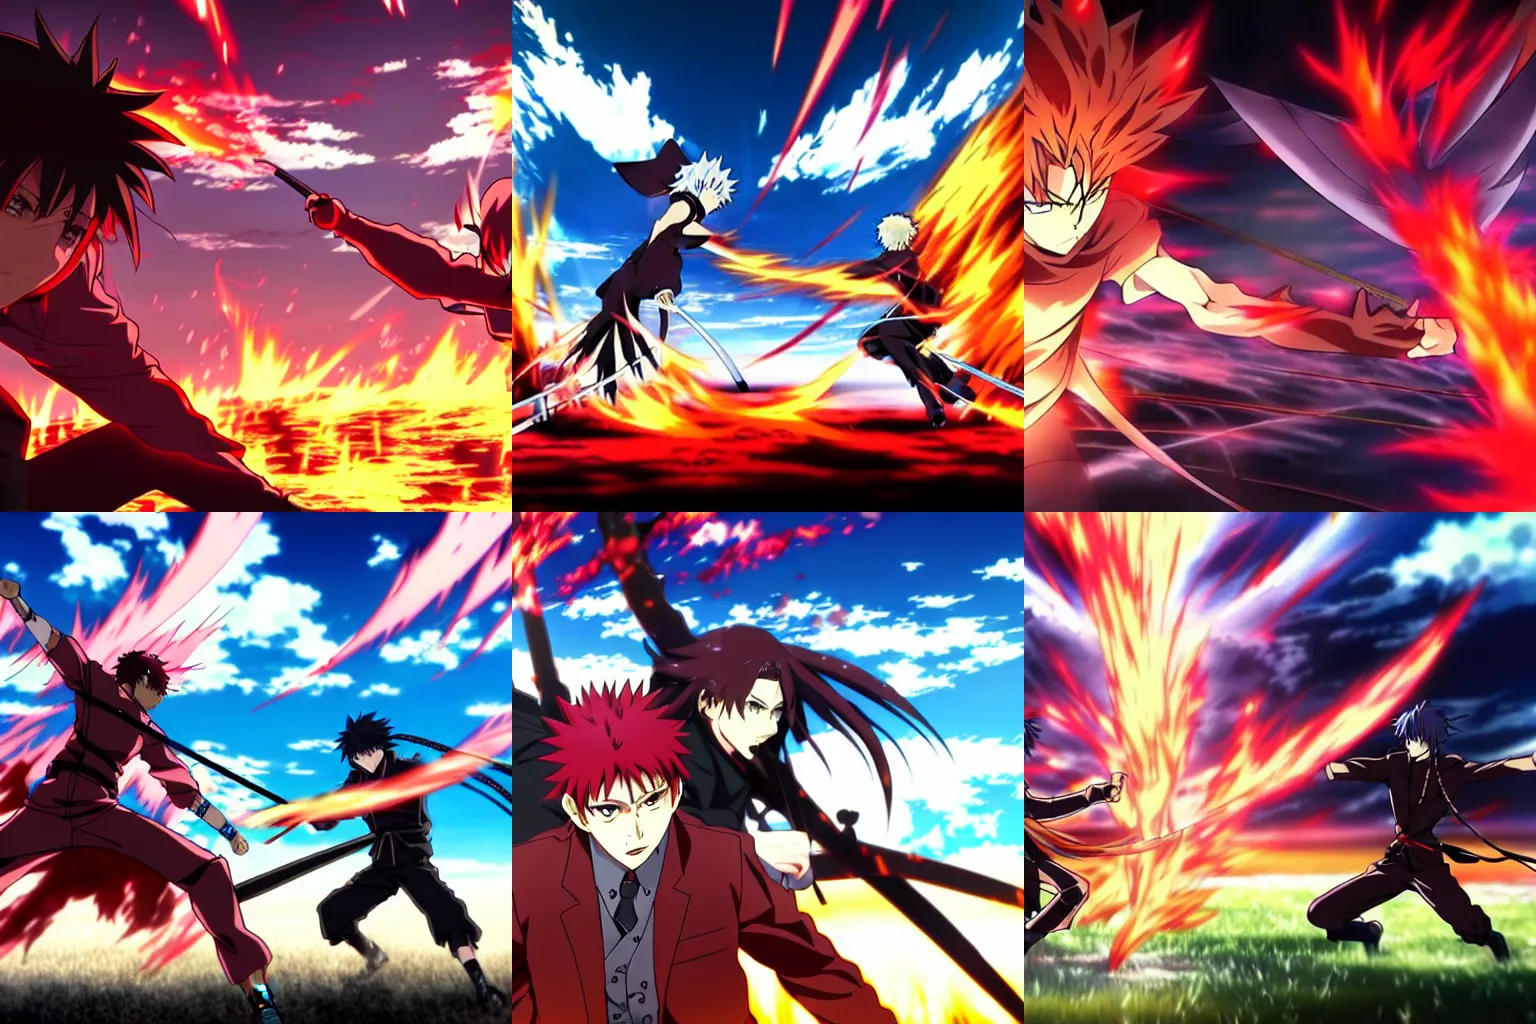 Prompt: still of an intense anime battle, fiery battlefield, art by anime studio ufotable.